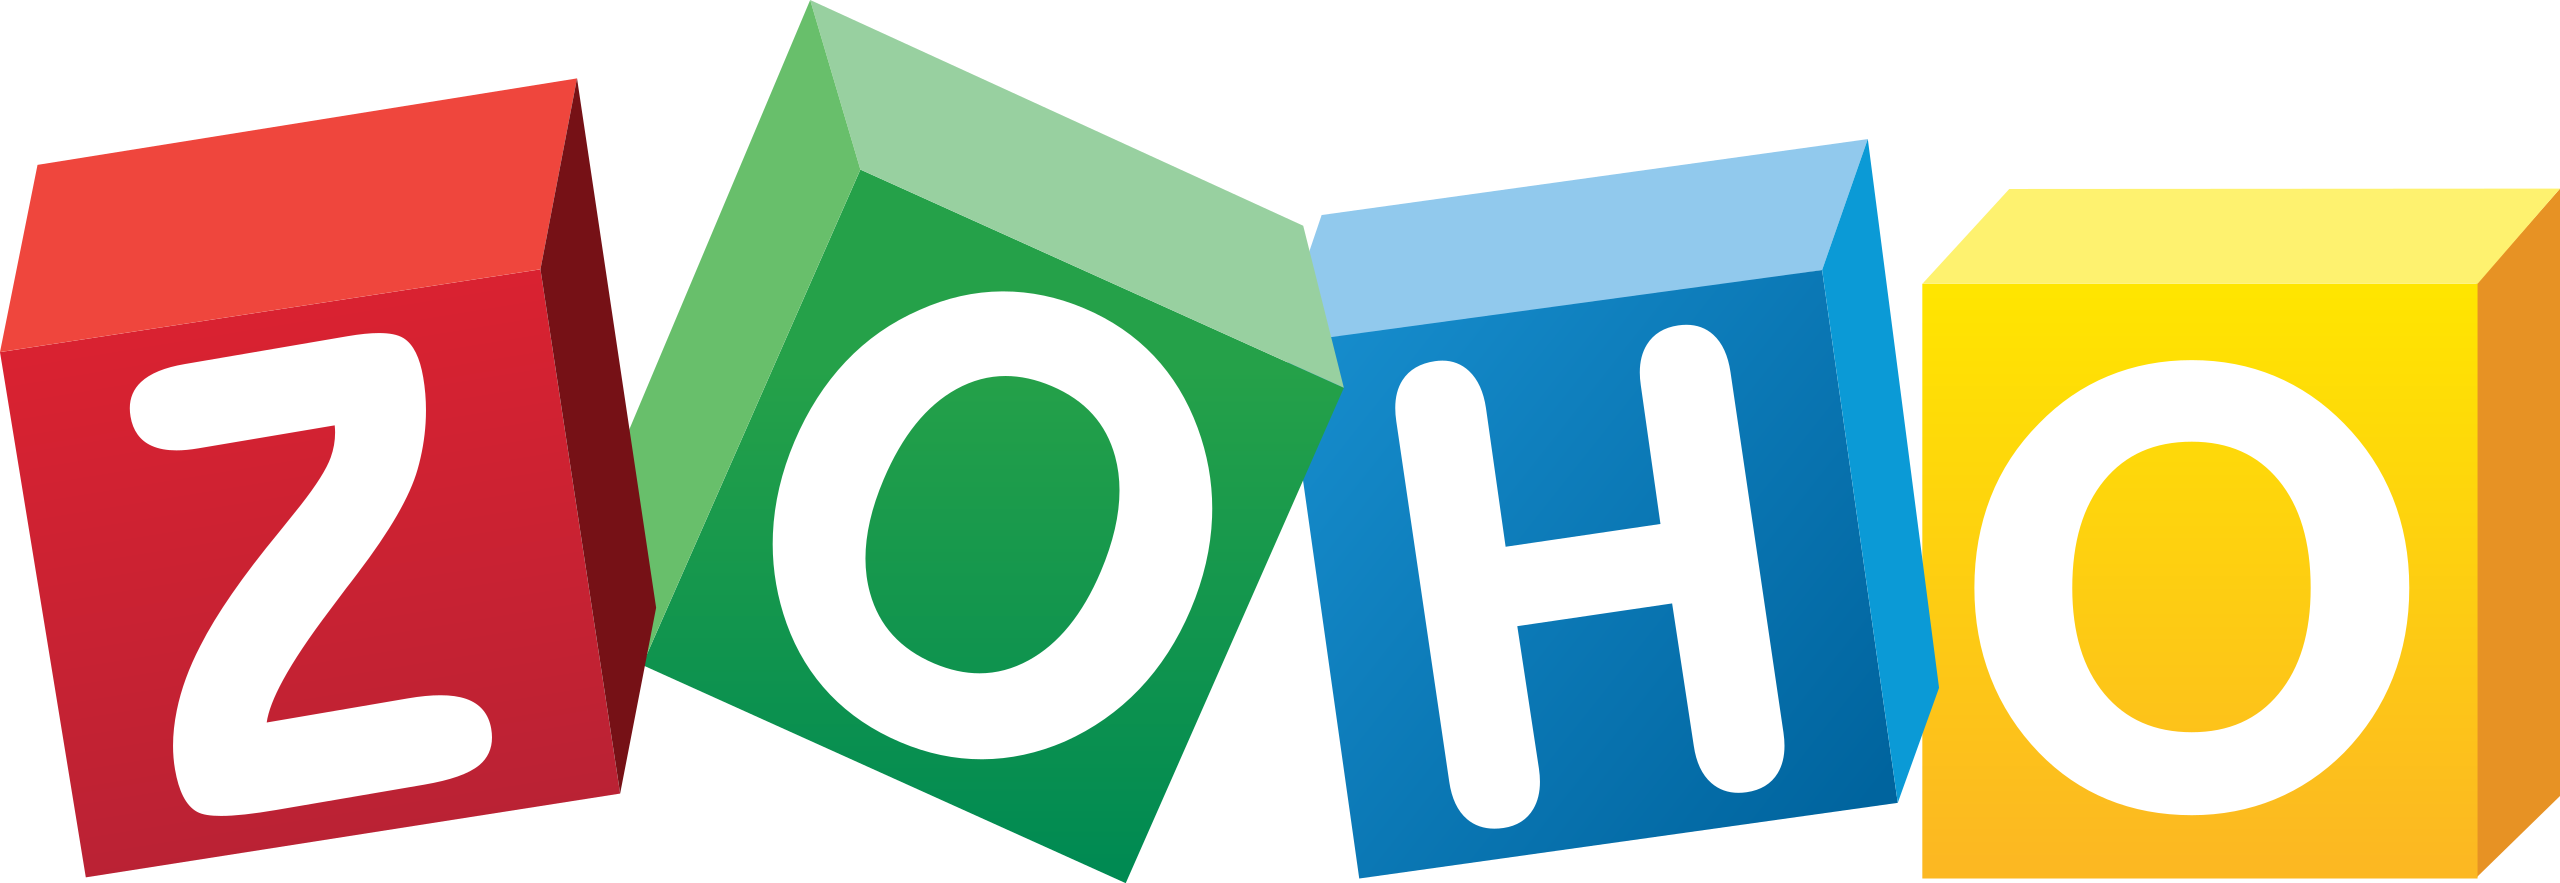 Zoho logo software development